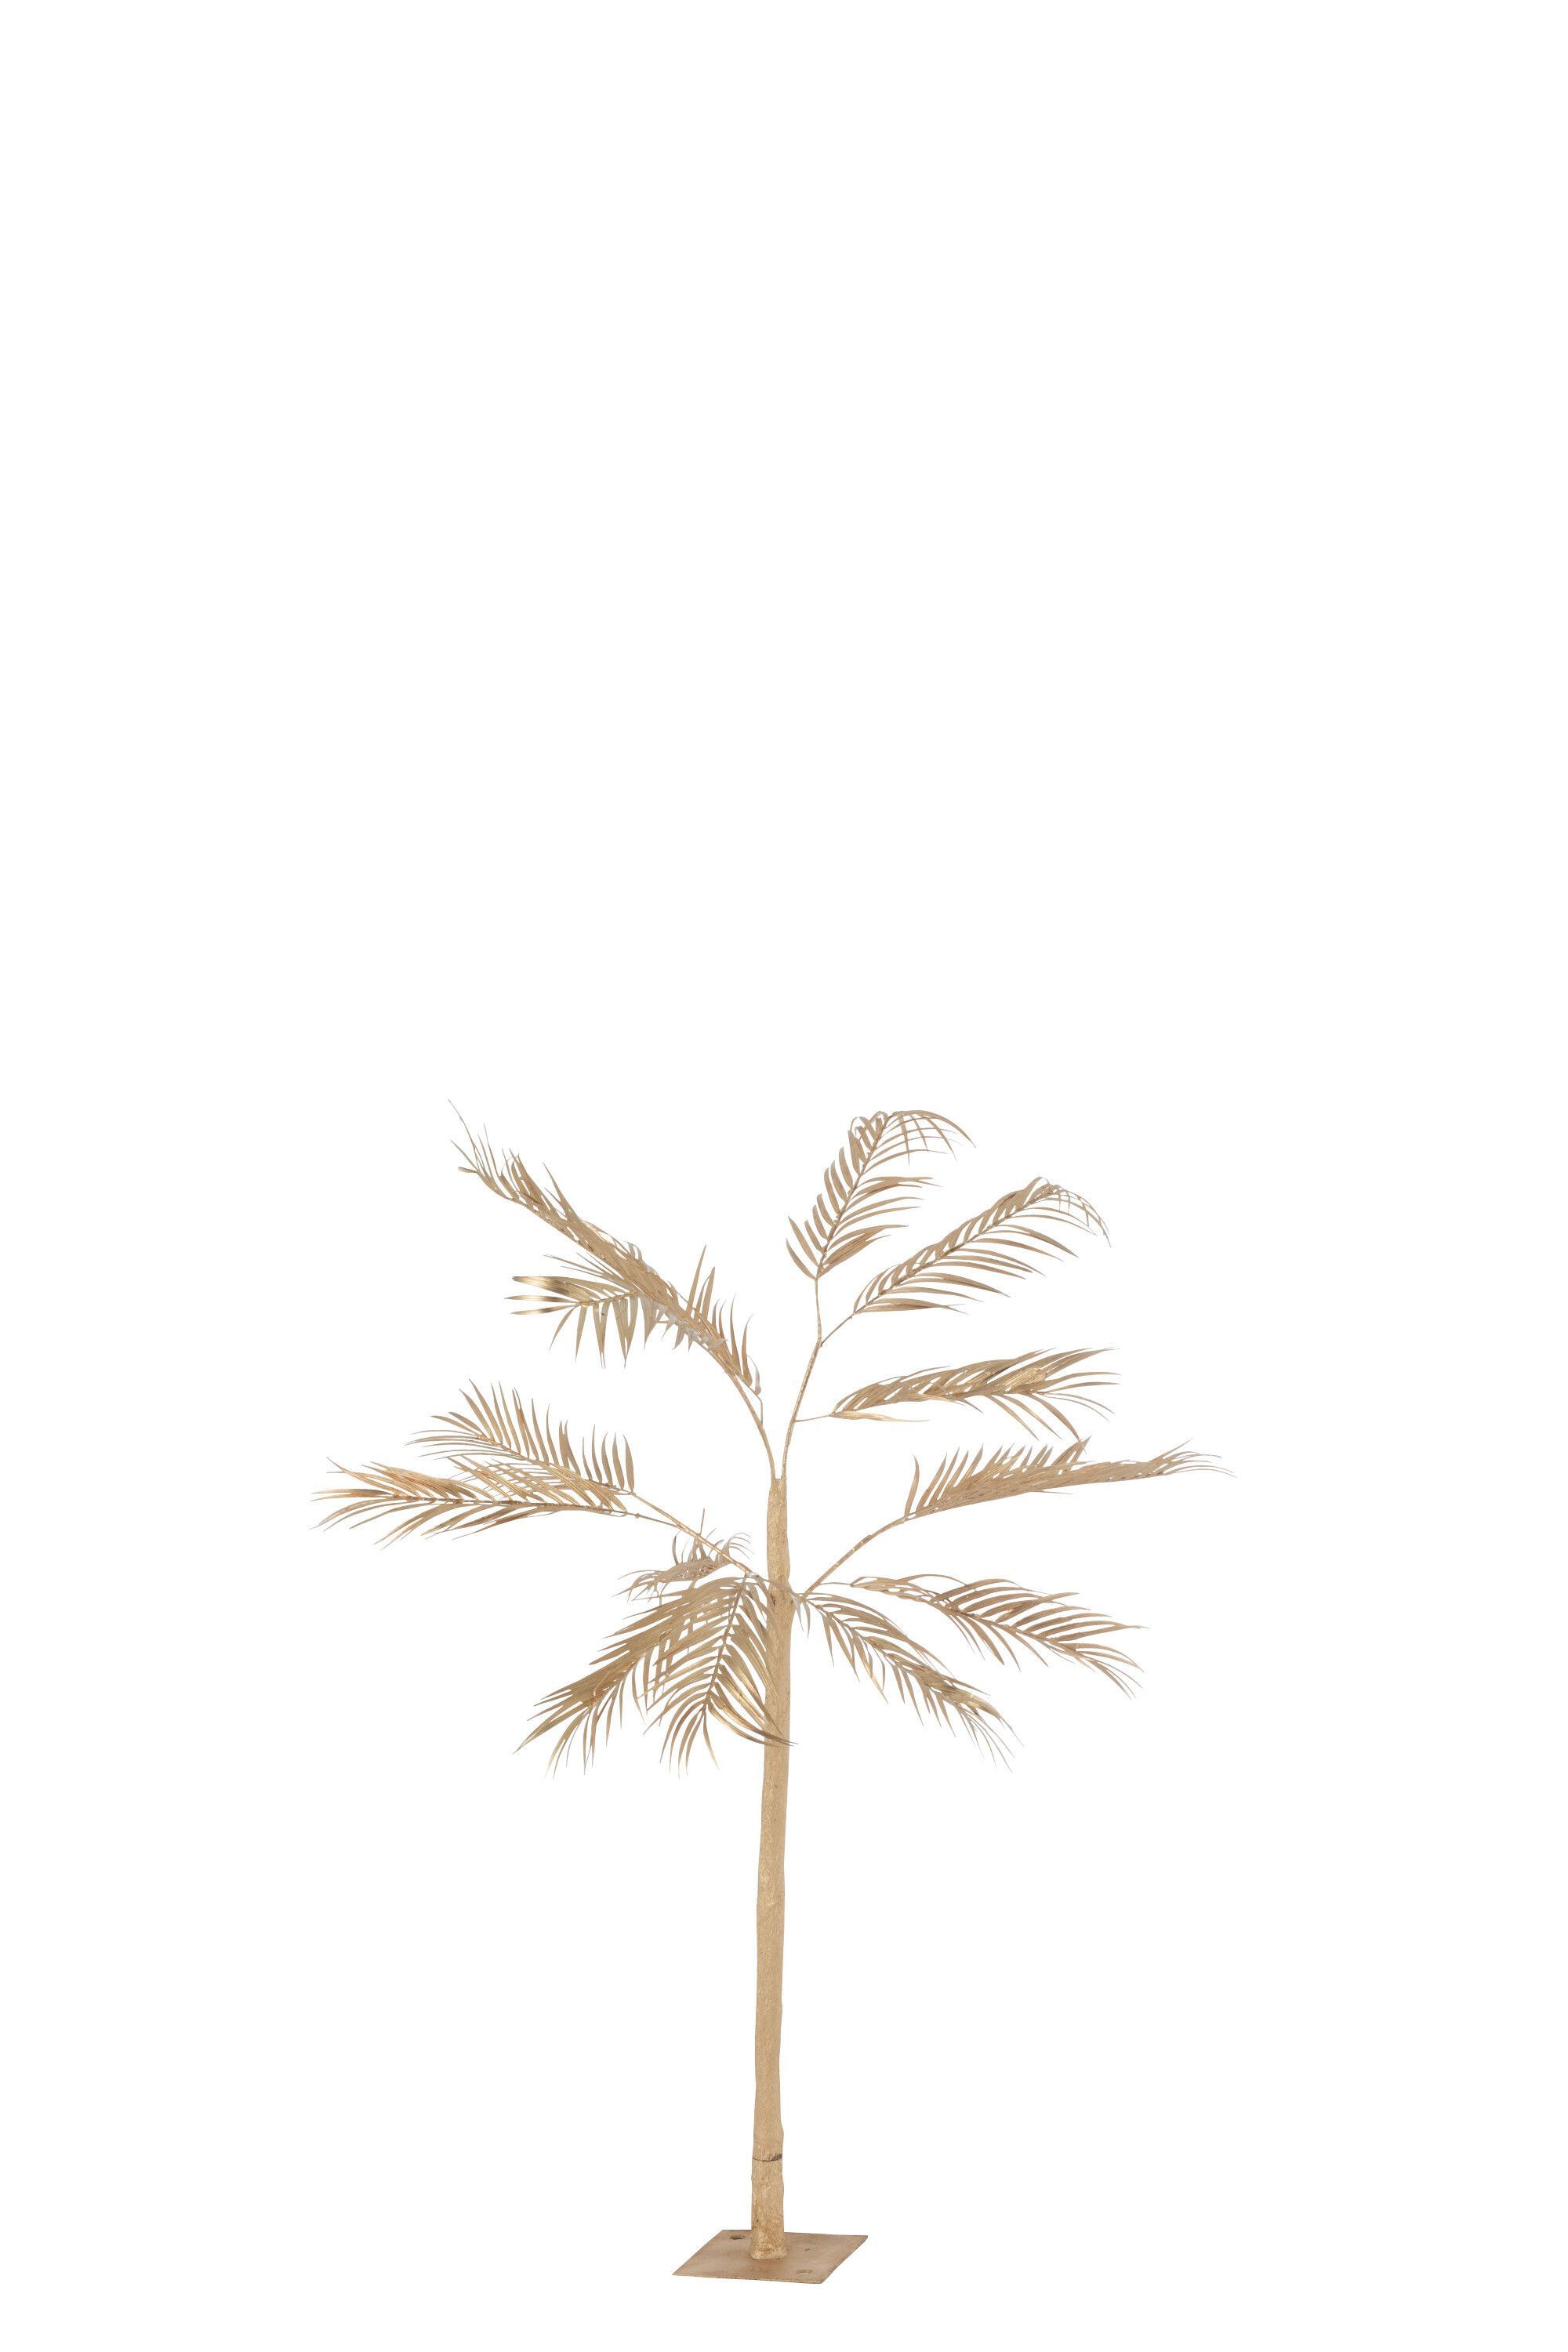  Baum Hintergrundbild 2000x3000. Baum Palmblätter 1 Stamm Stahl Gold Small Line